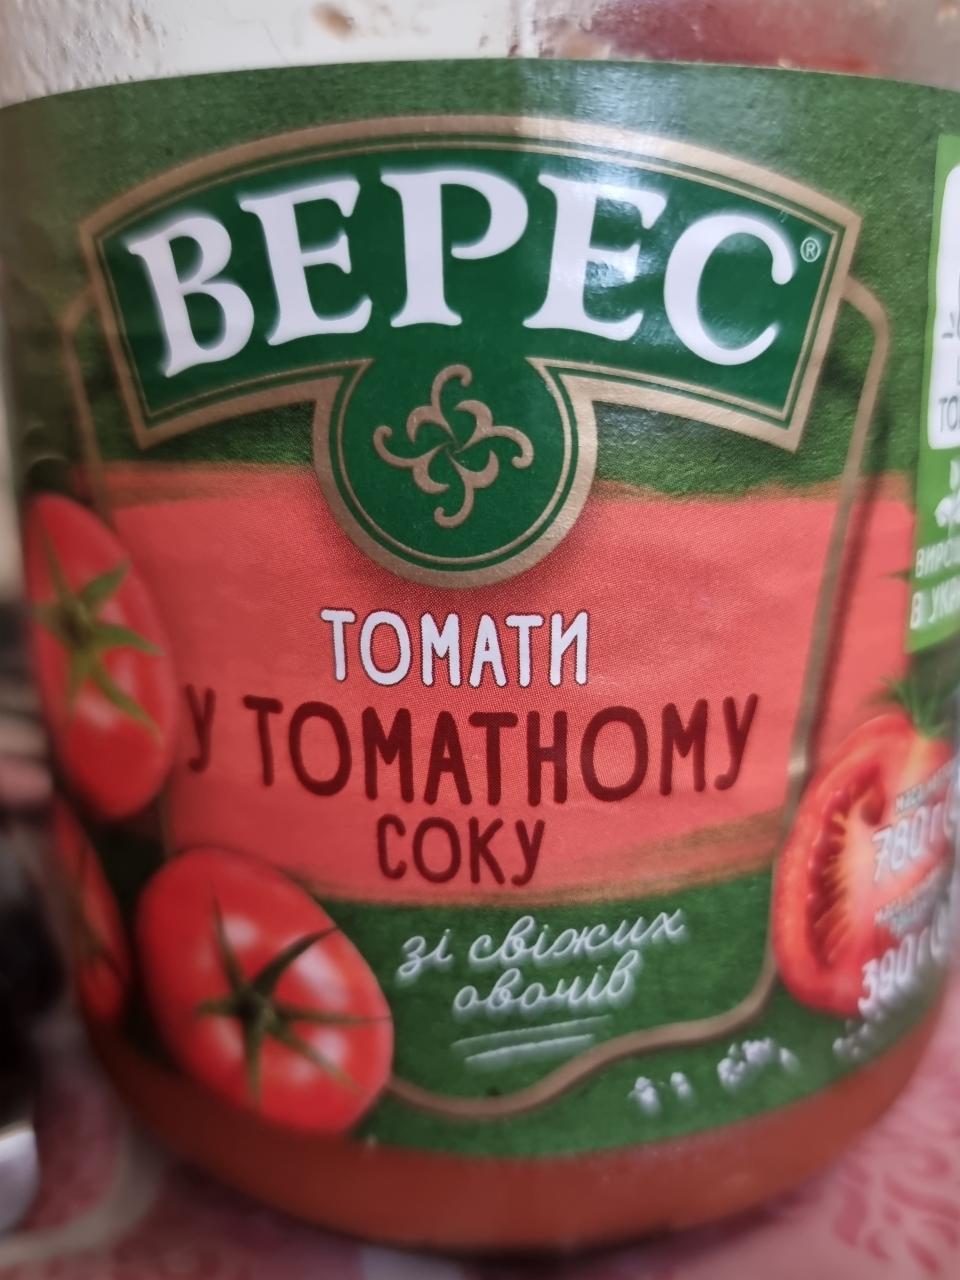 Фото - Томаты в томатном соке Верес